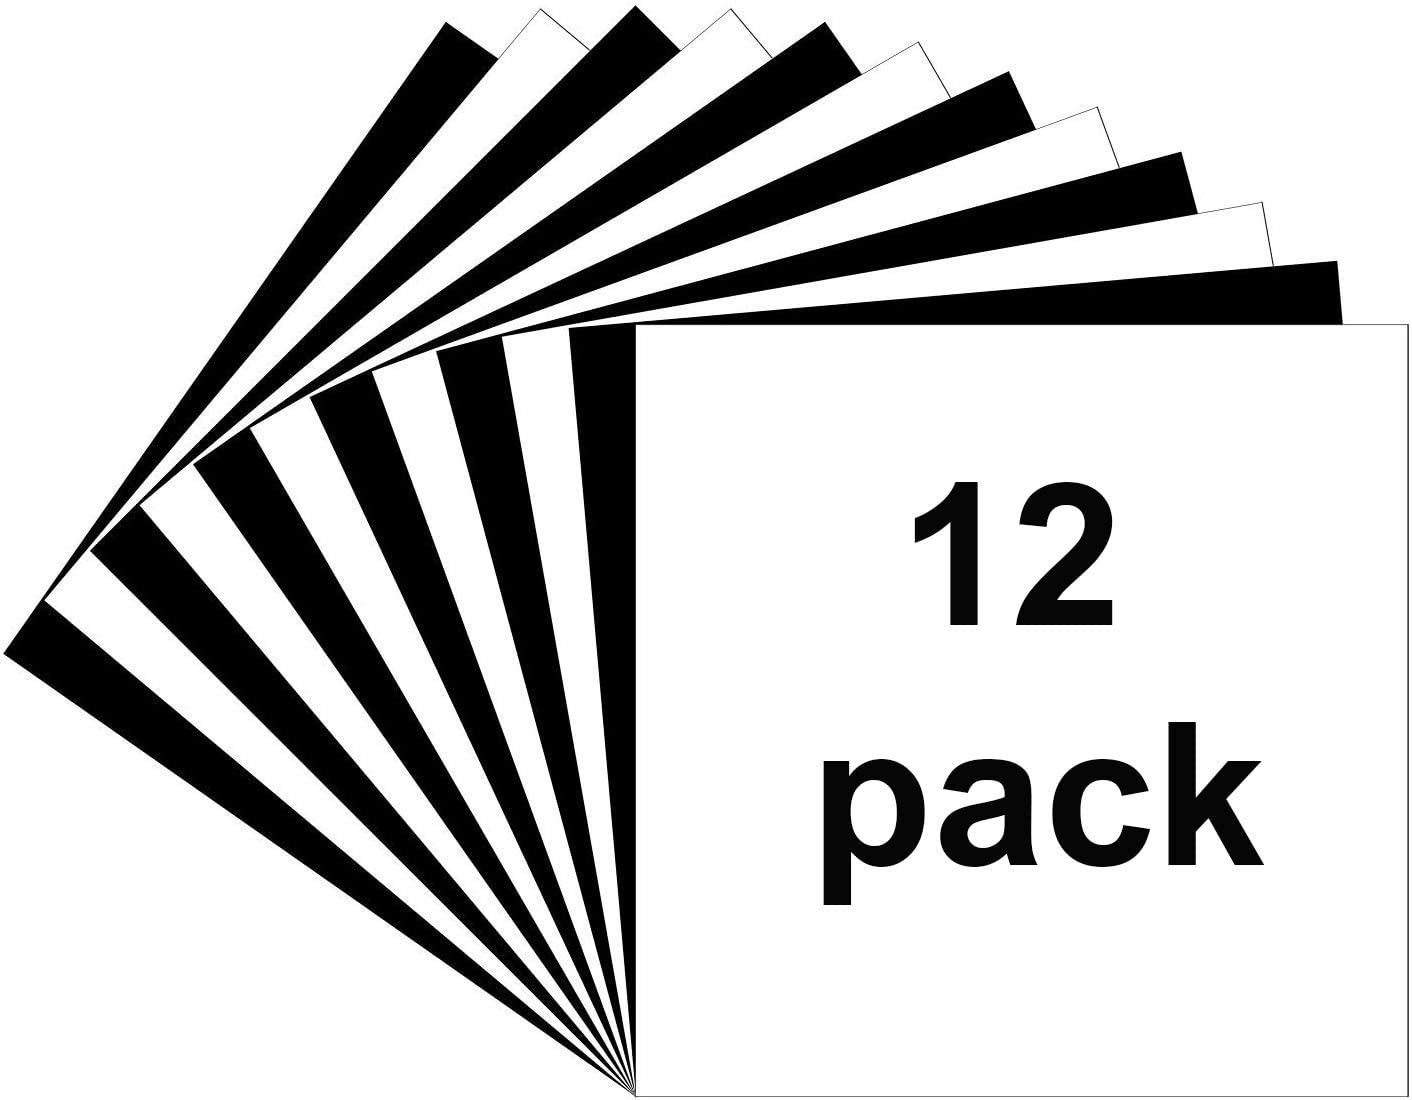 Hojas de vinilo adhesivo permanente blanco de 12 x 12 pulgadas, paquete de  5 unidades de vinilo blanco brillante ORACAL 651 para marcado en interiores